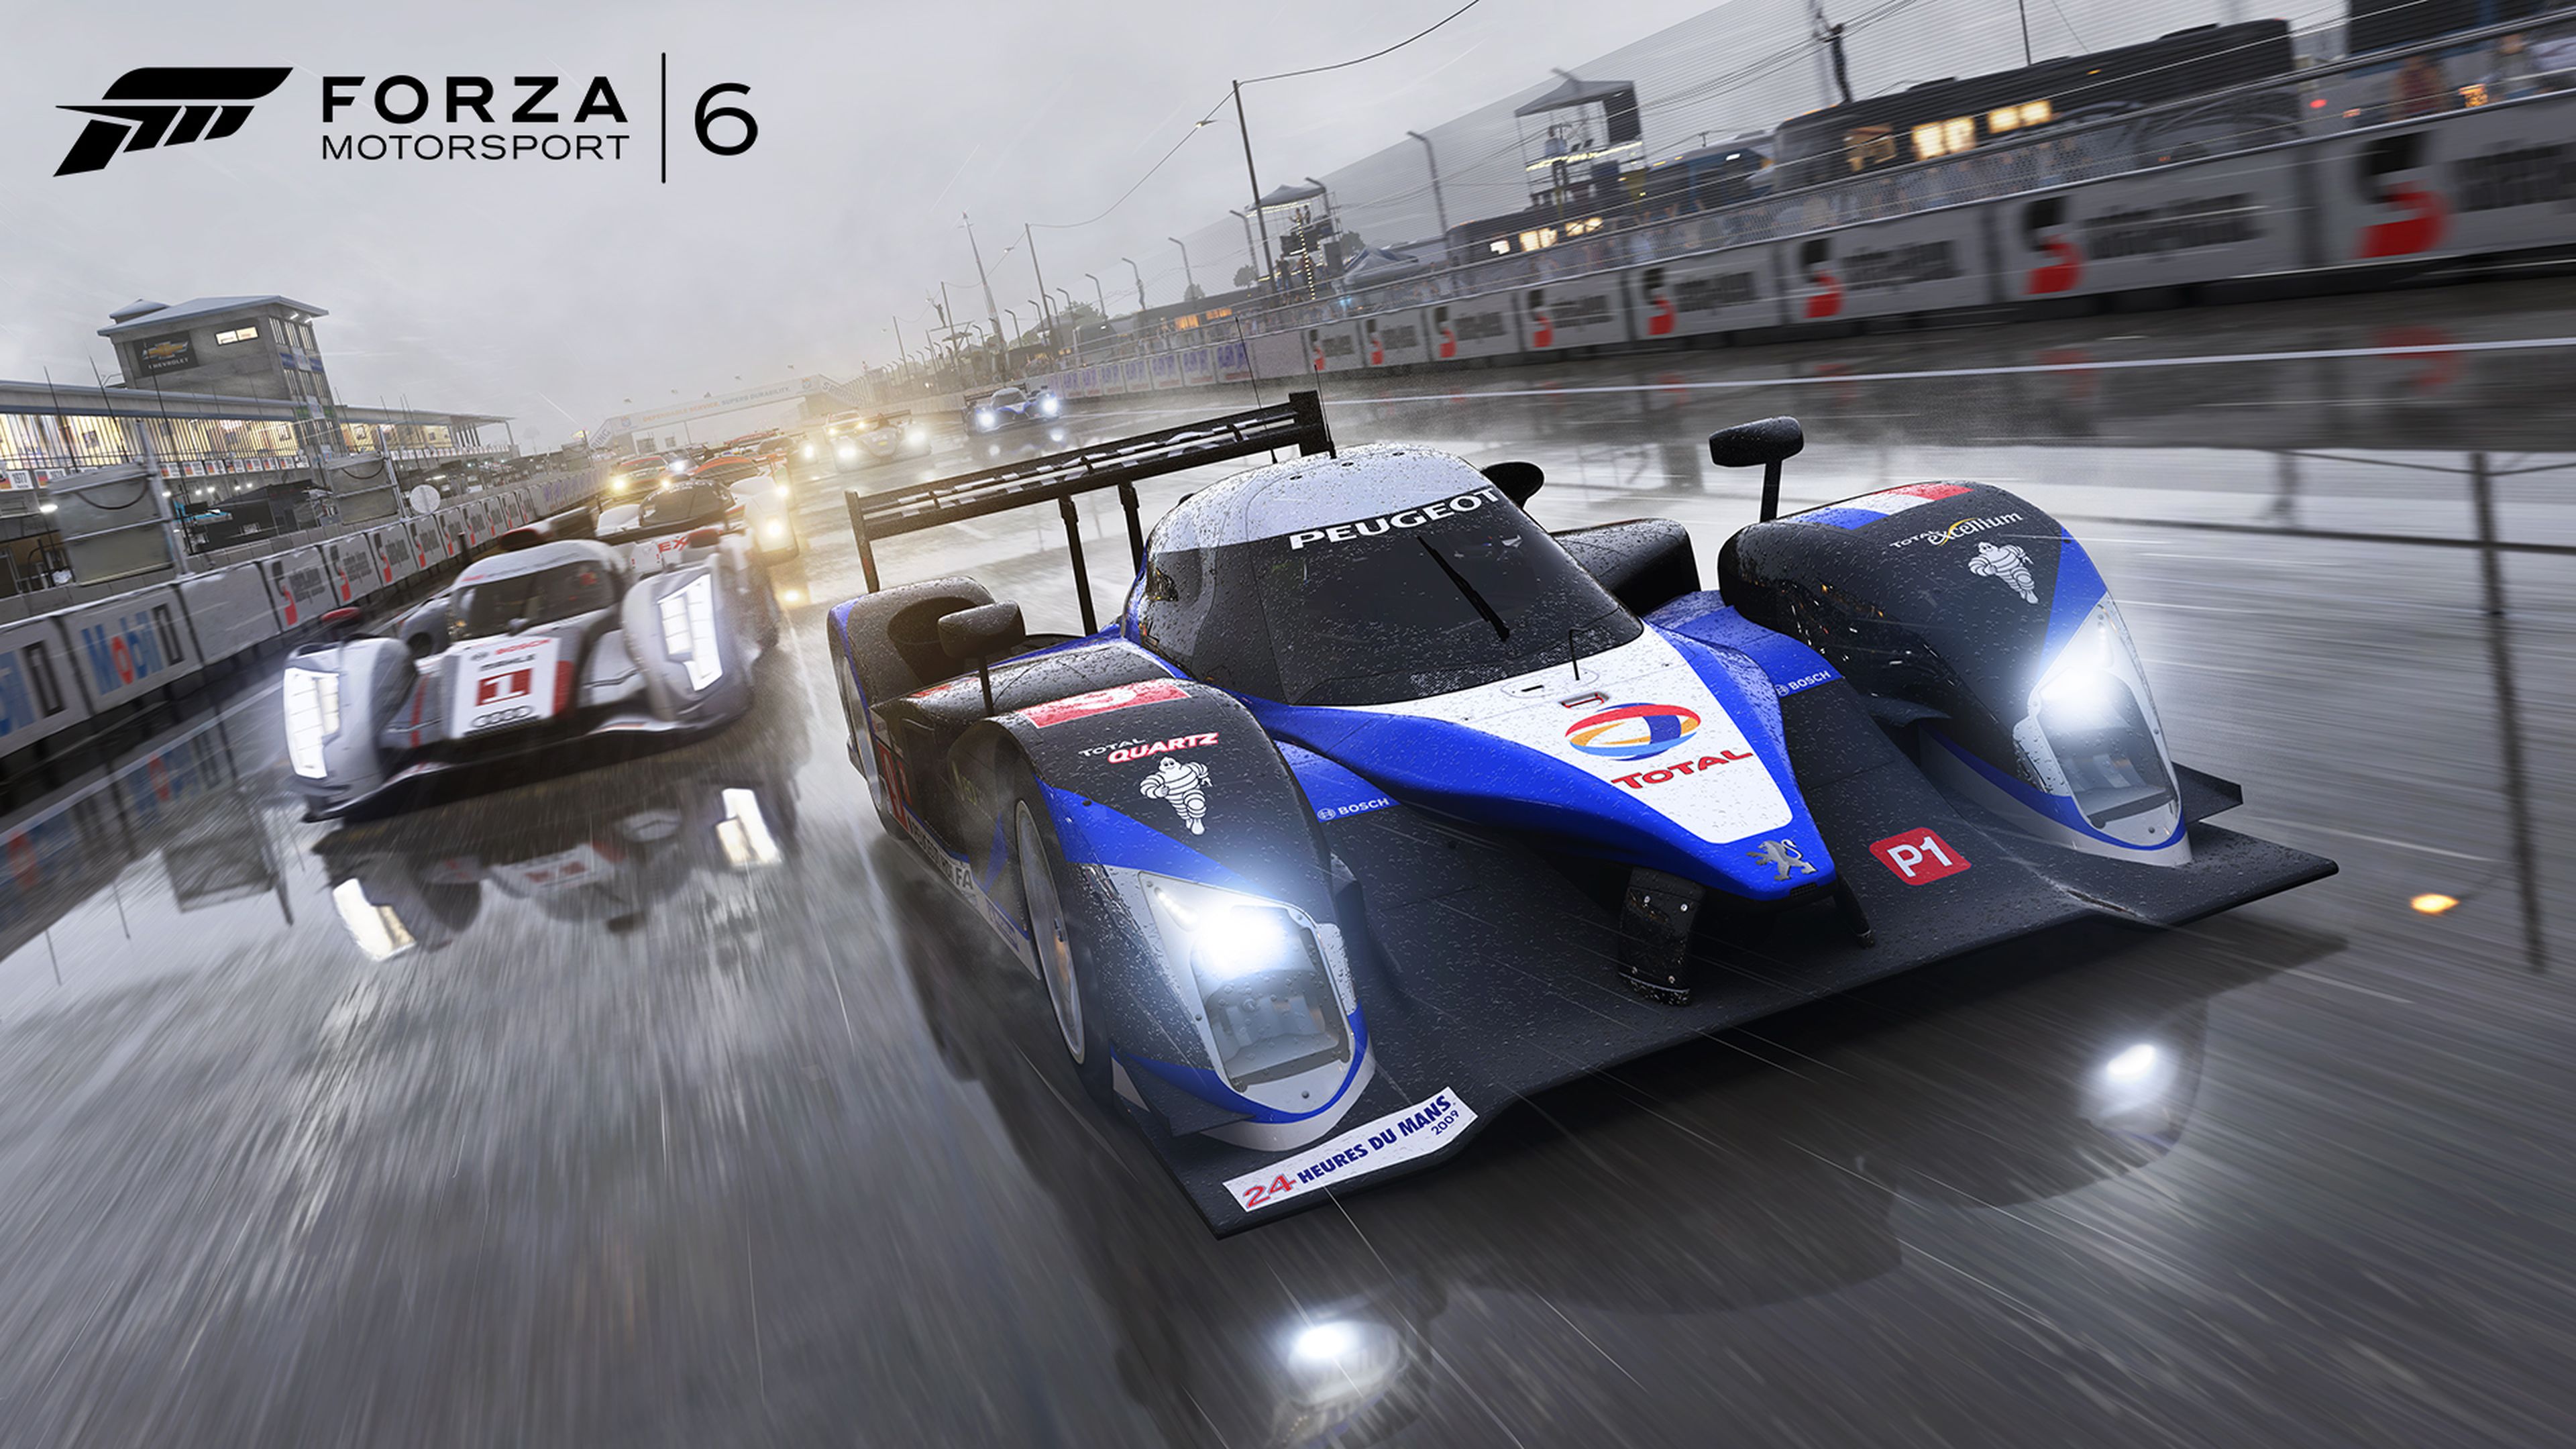 Forza Motorsport 6, tamaño de instalación